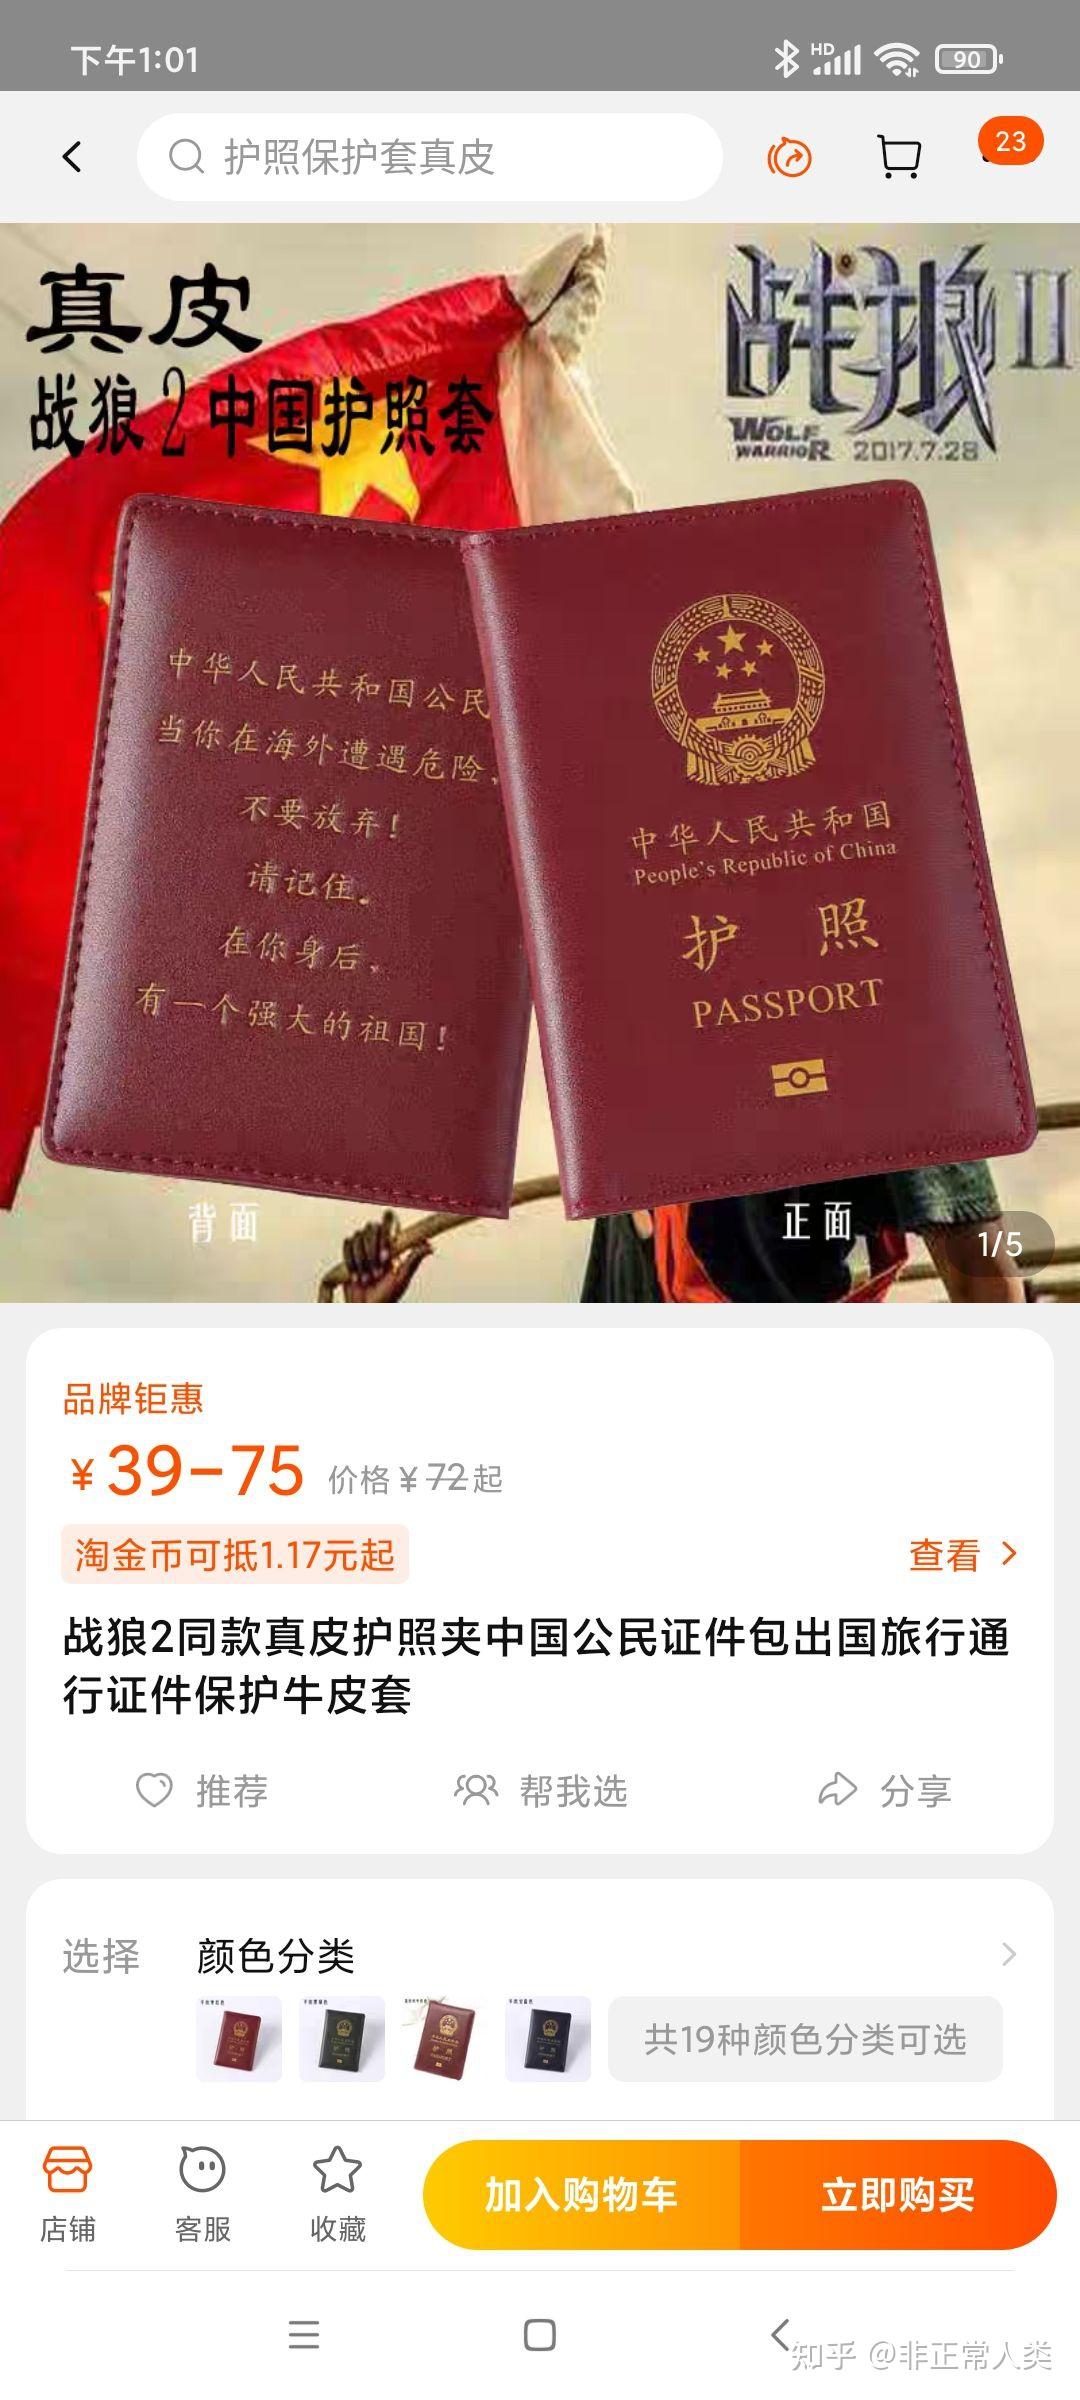 战狼2结尾的中国护照上的字是杜撰的吗? 